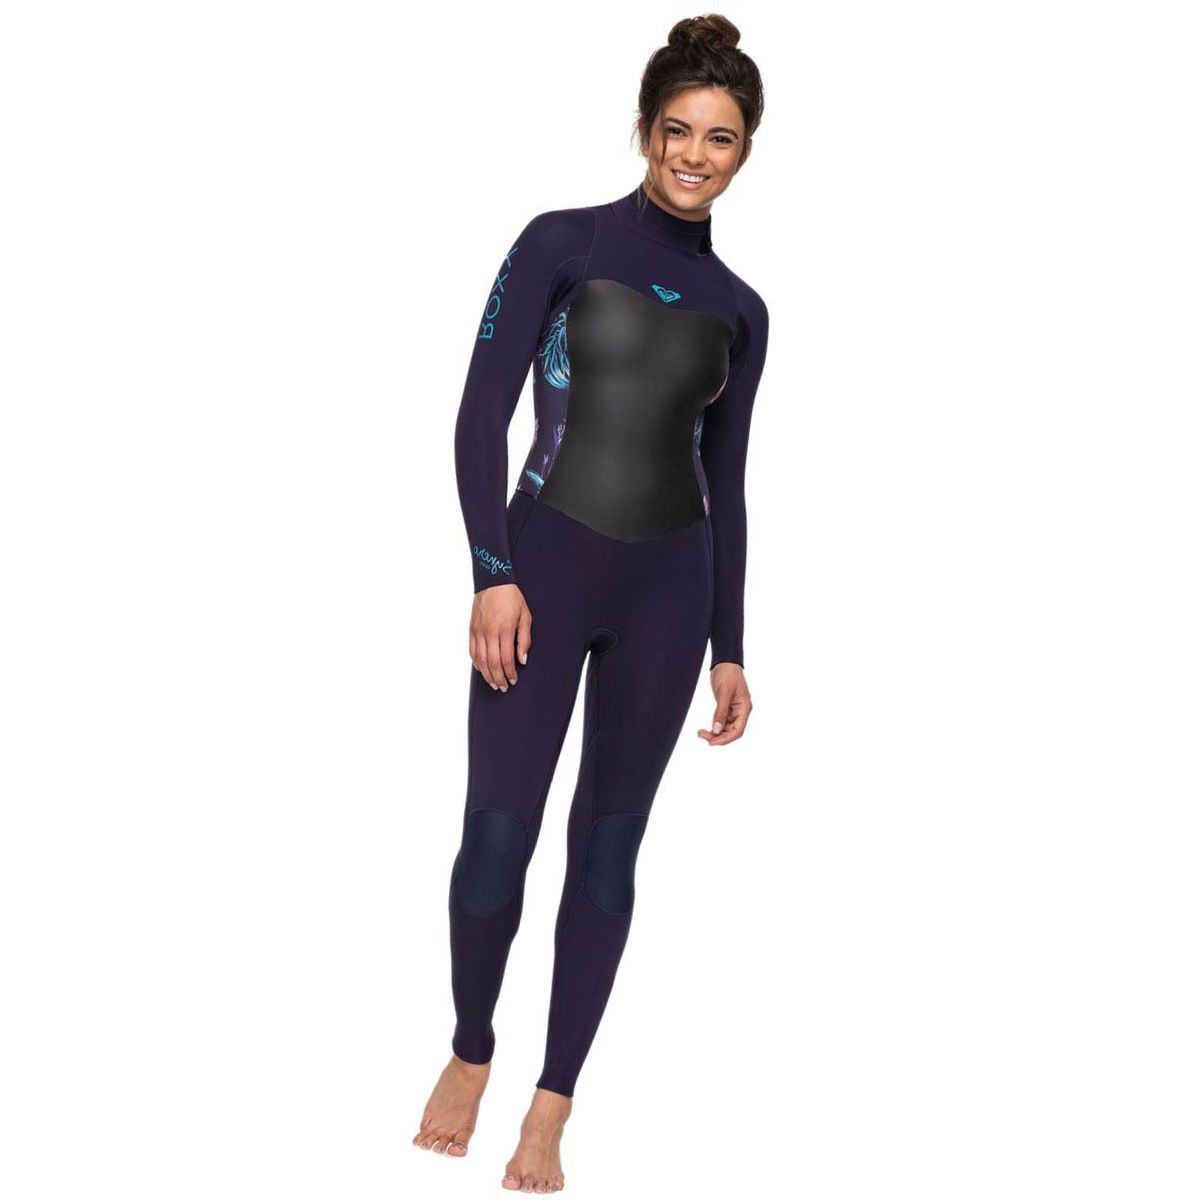 Roxy 3/2 Syncro Back-Zip GBS Wetsuit - Women's